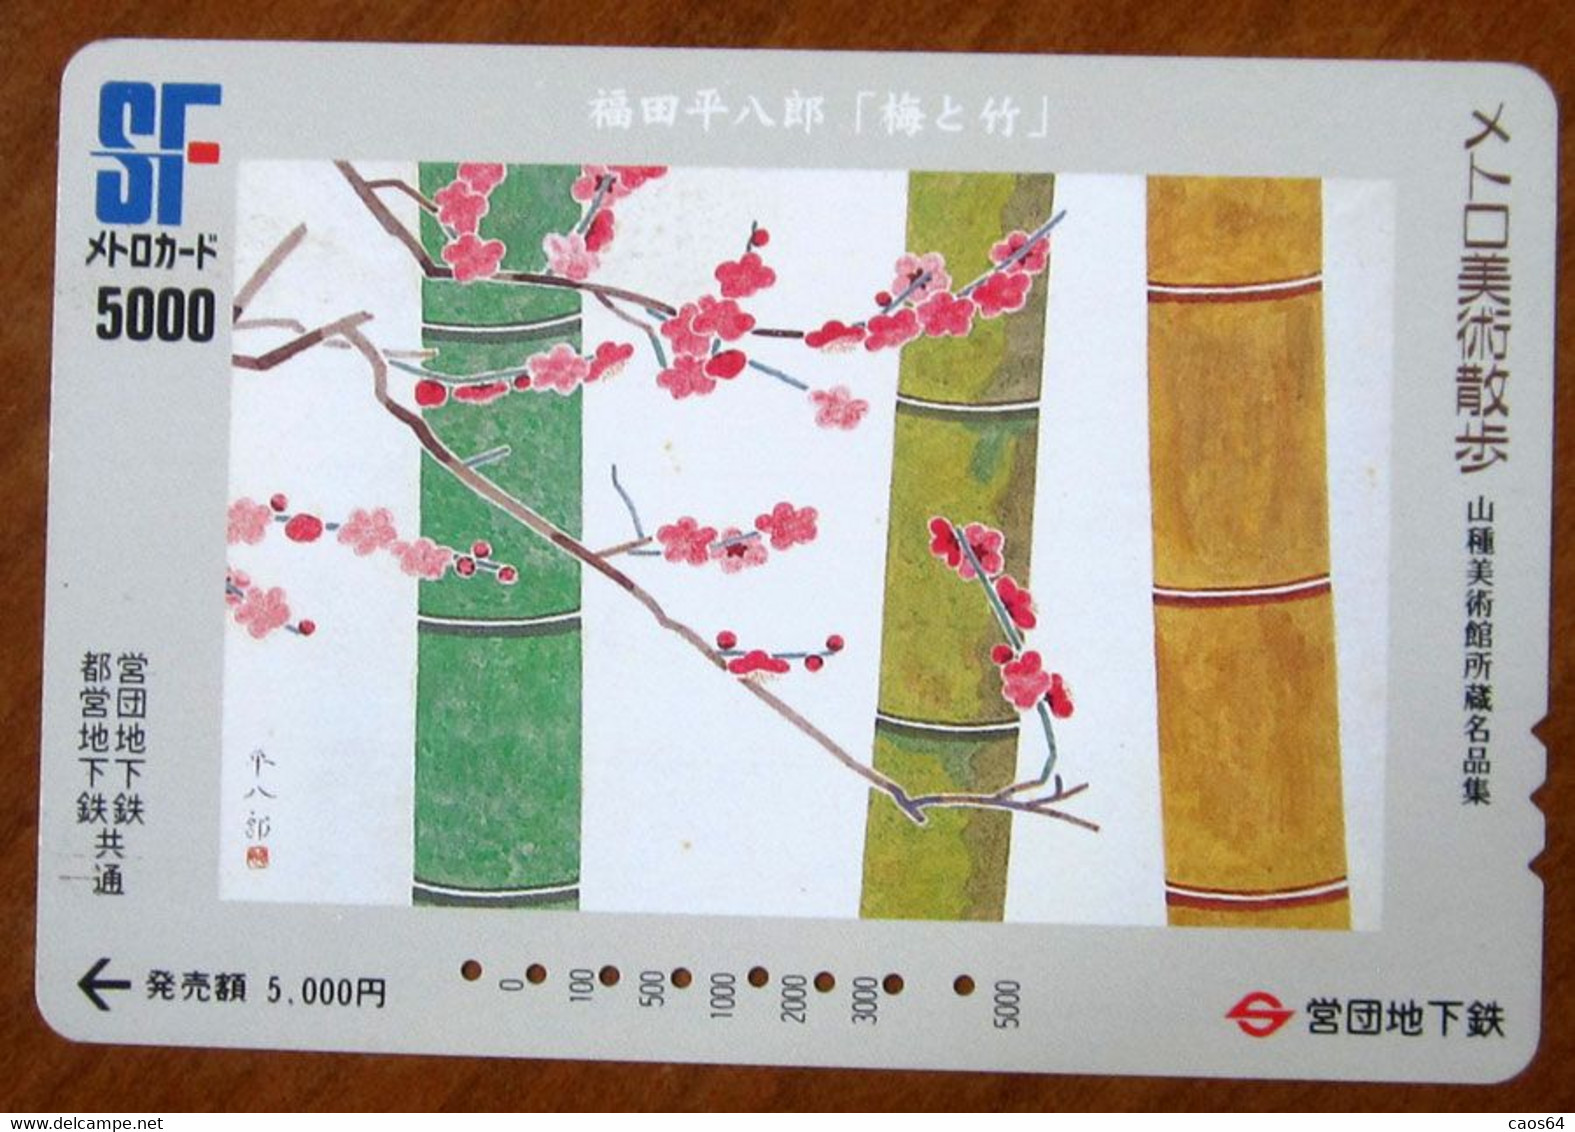 GIAPPONE Ticket Biglietto Treni Metro Bus - Fiori Flower Railway SF Card 5.000 ¥ - Usato - Unclassified